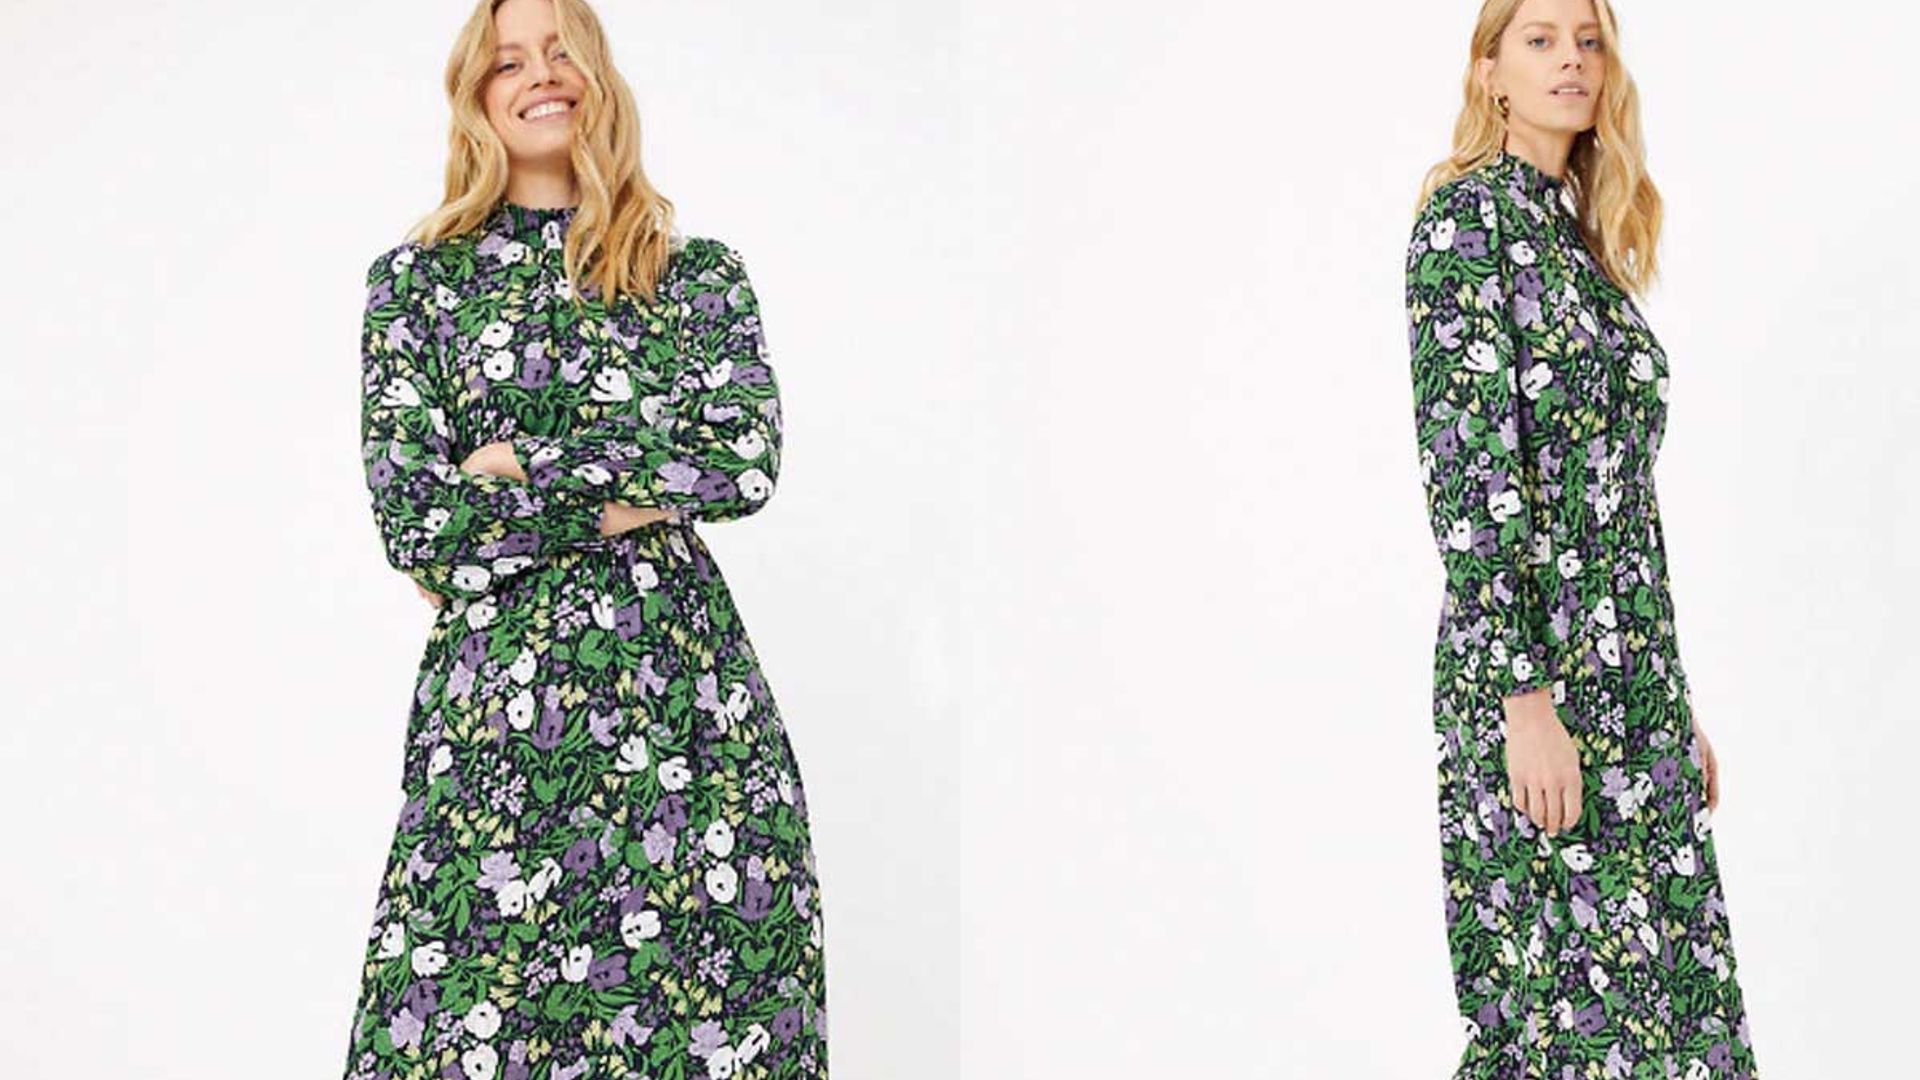 M&S Per Una Natural Multi Floral Print Summer Dress RRP £39.50  UK8 or 10